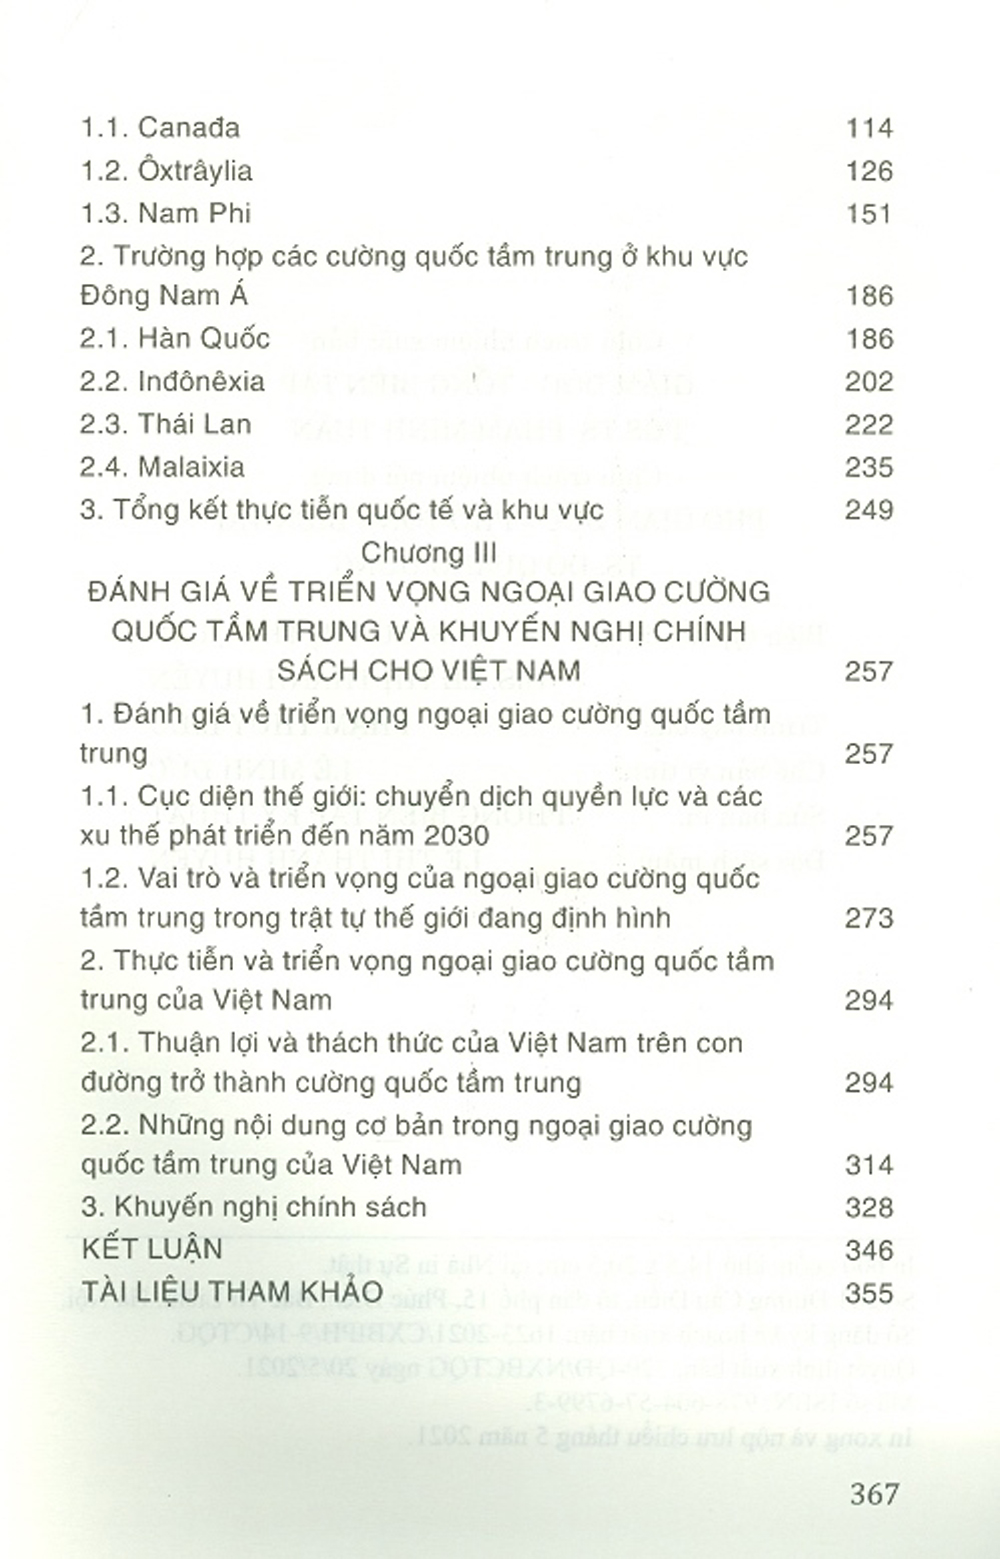 Ngoại Giao Cường Quốc Tầm Trung: Lý Thuyết, Thực Tiễn Quốc Tế Và Hàm Ý Cho Việt Nam (Sách Tham Khảo)